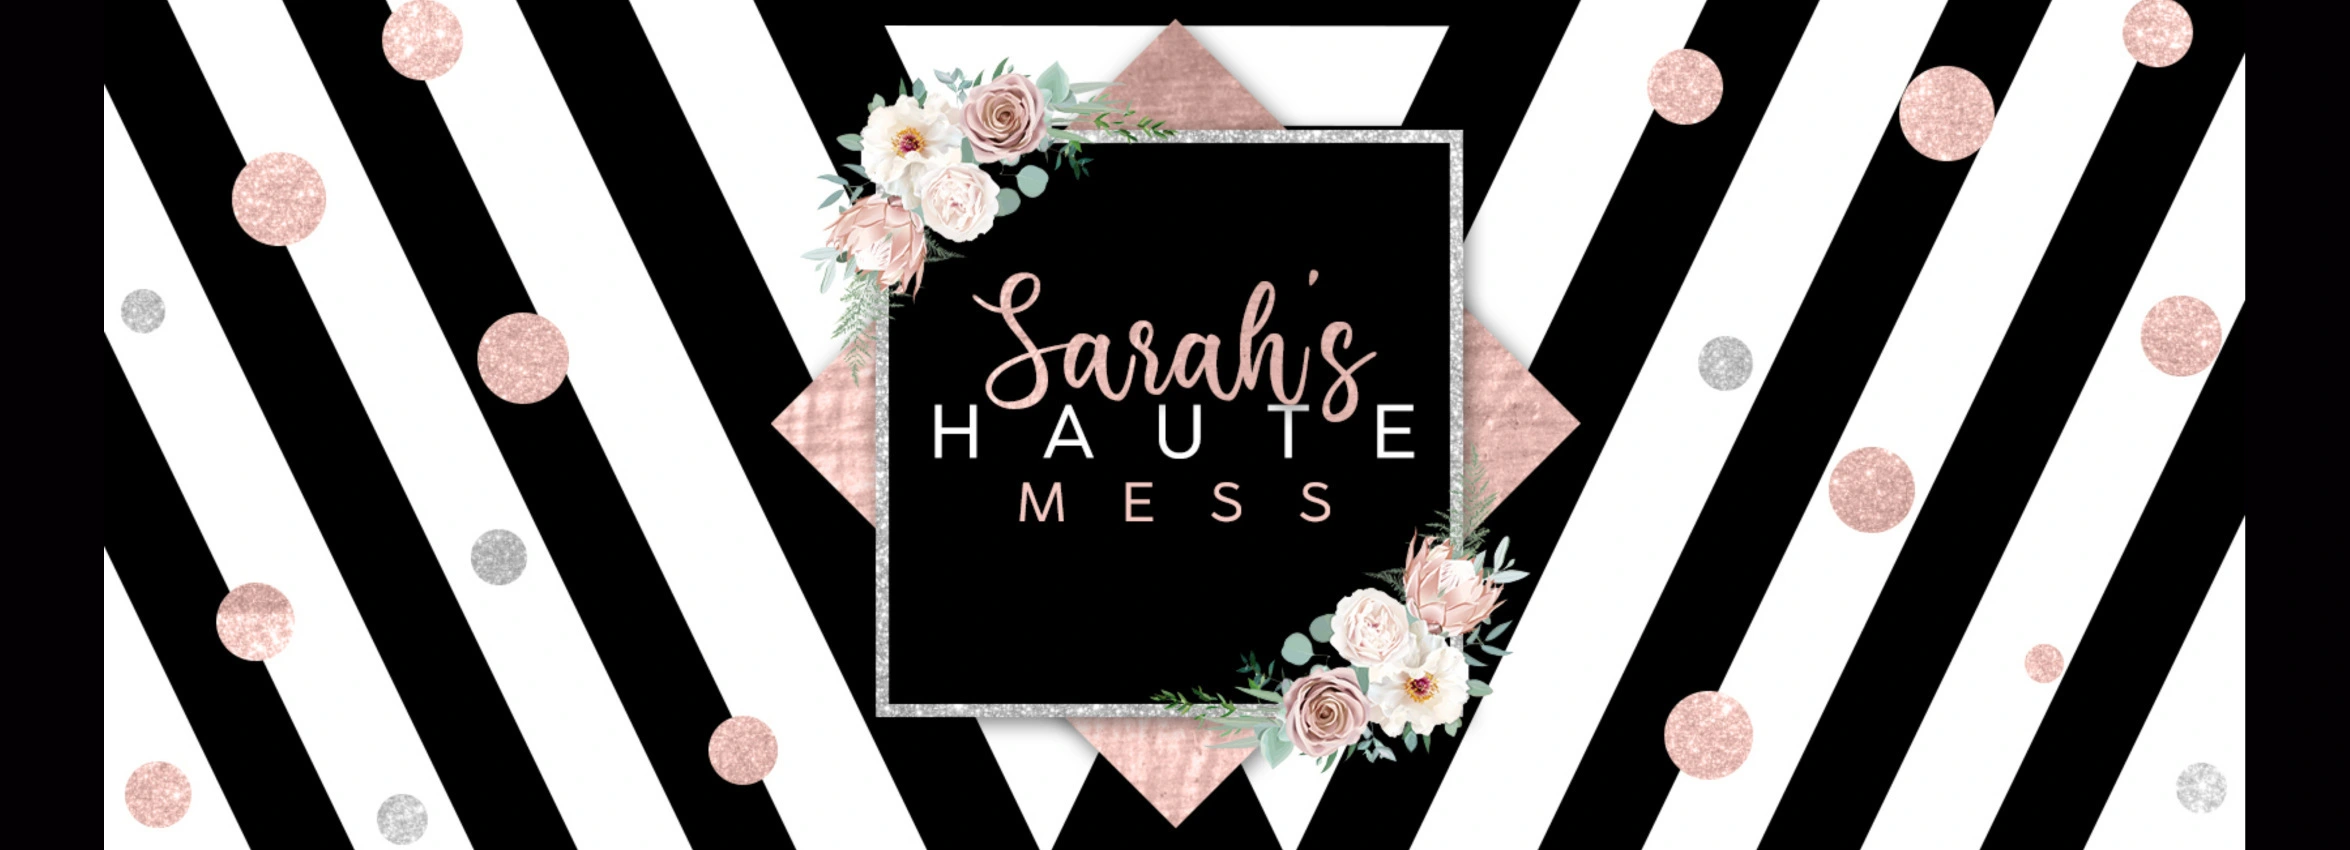 Sarahs-Haute-Mess_Desktop_ET